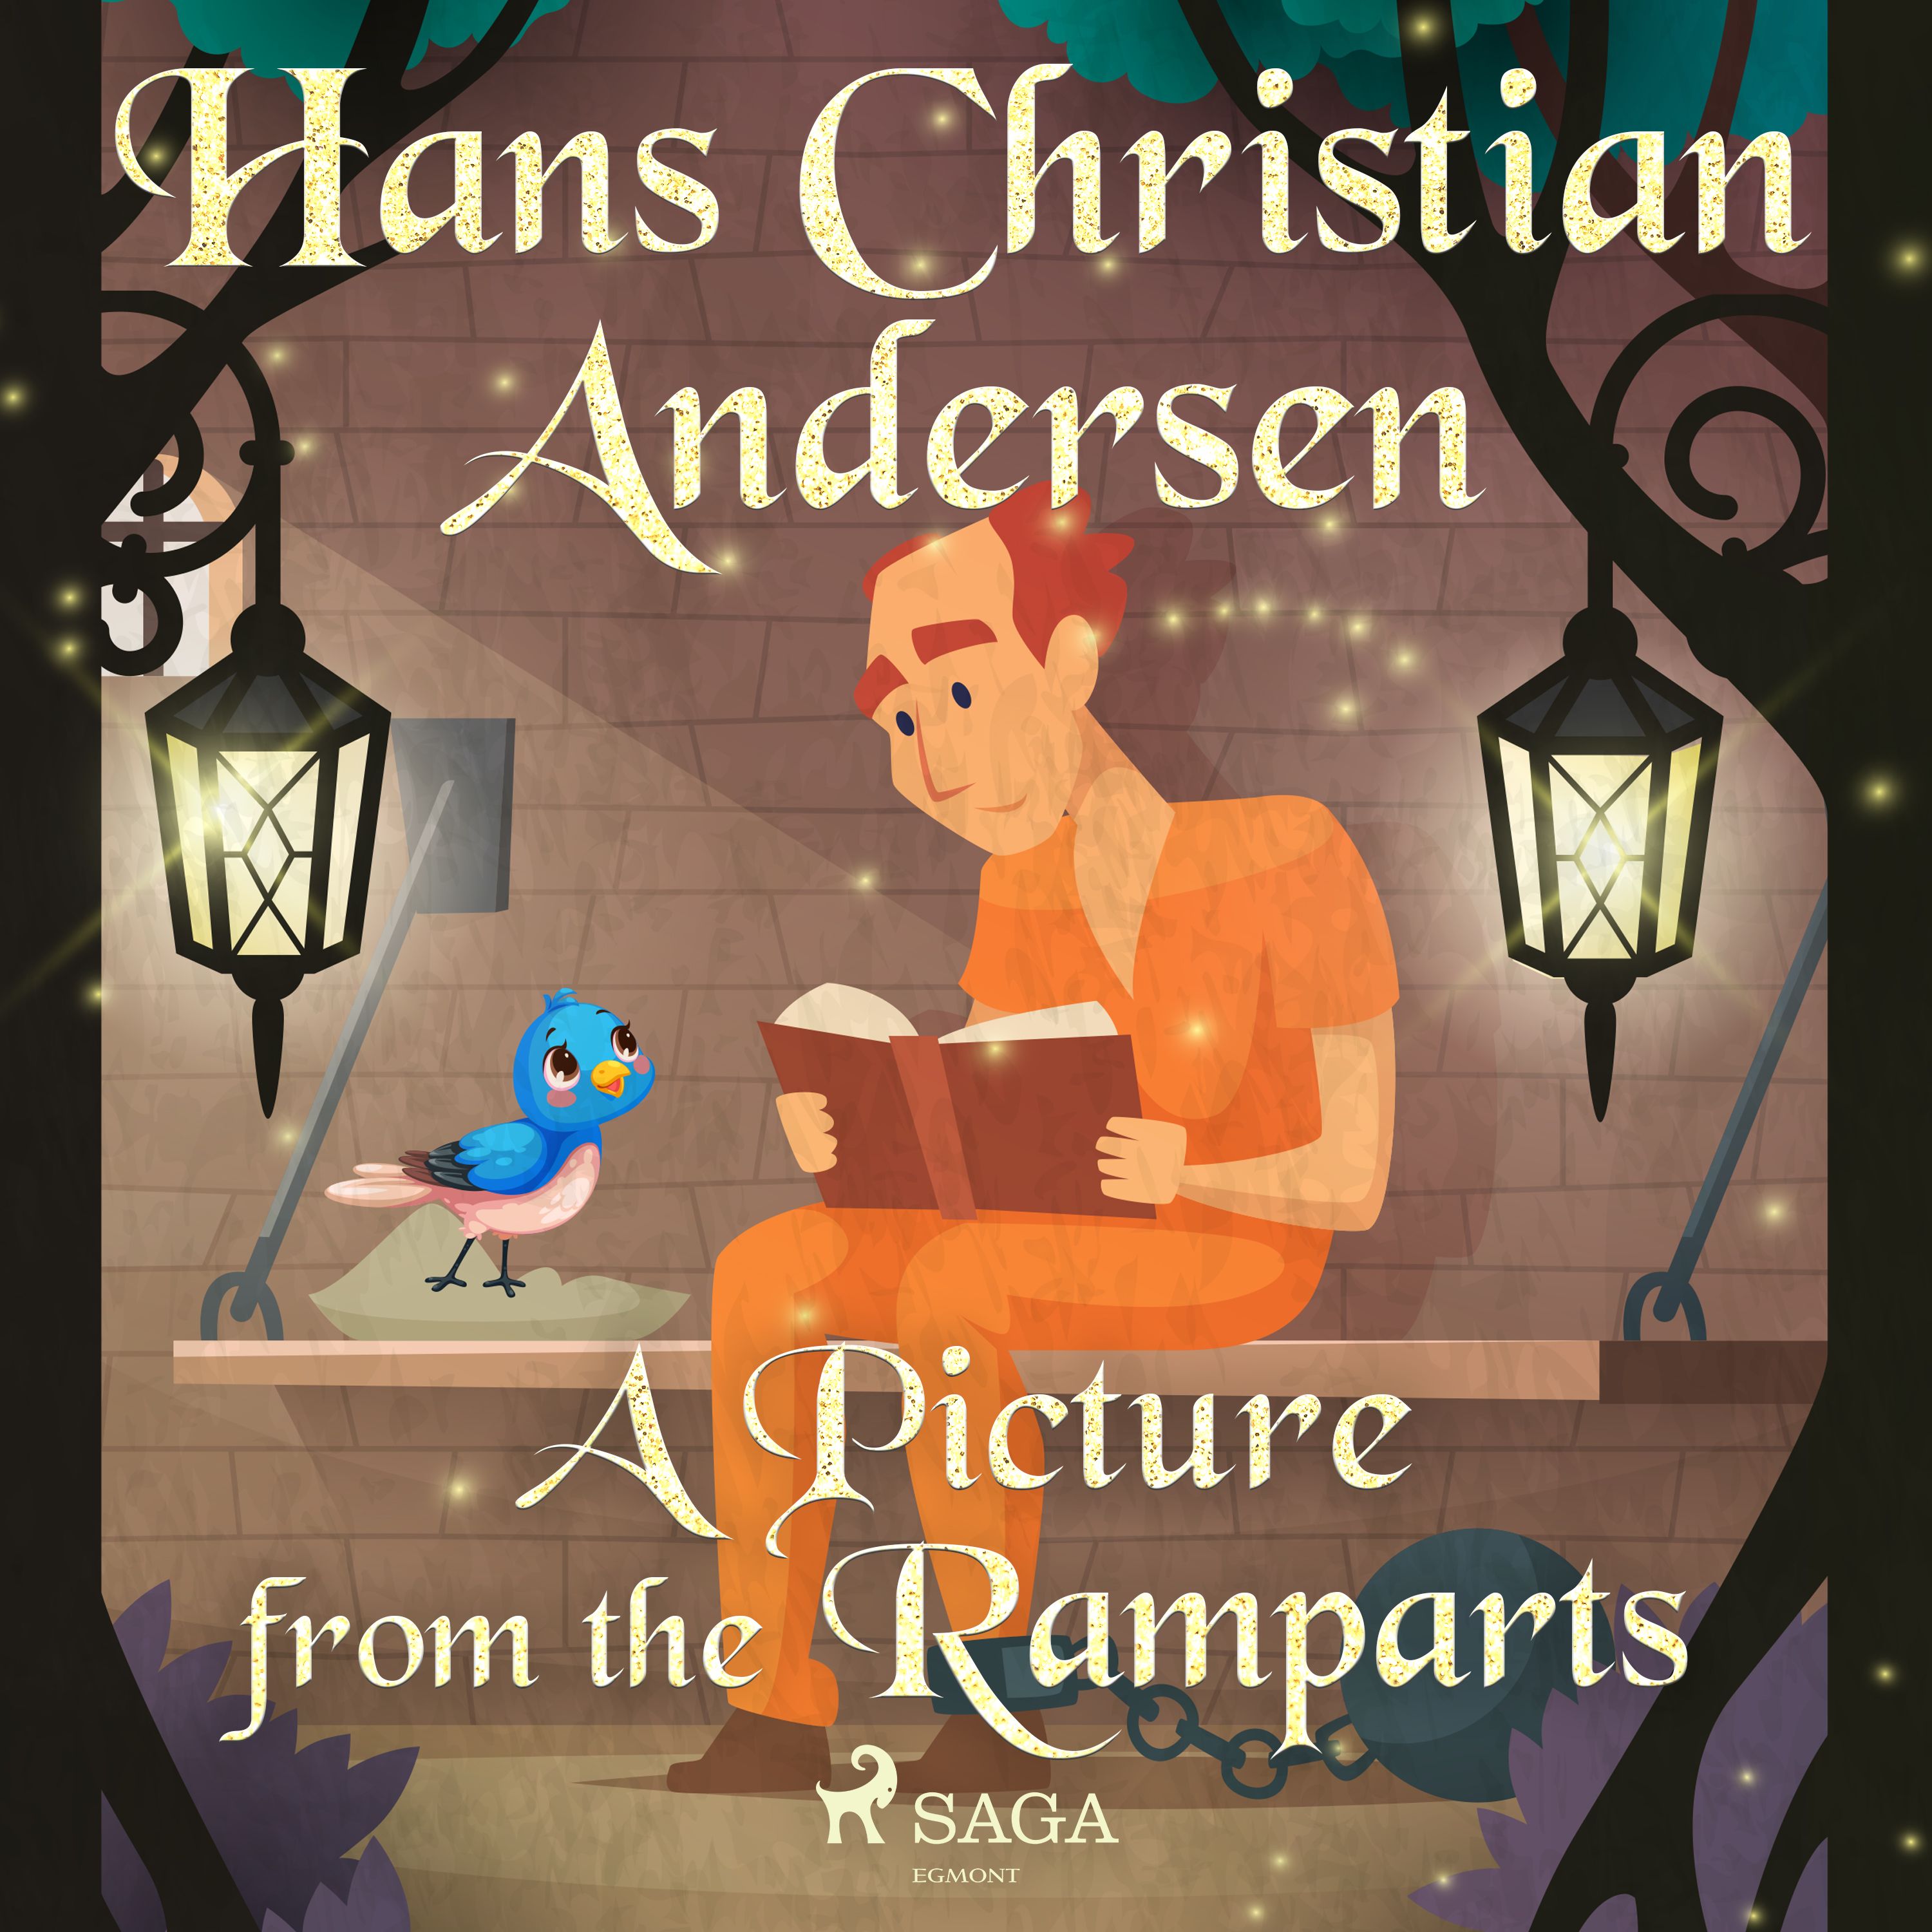 A Picture from the Ramparts, ljudbok av Hans Christian Andersen